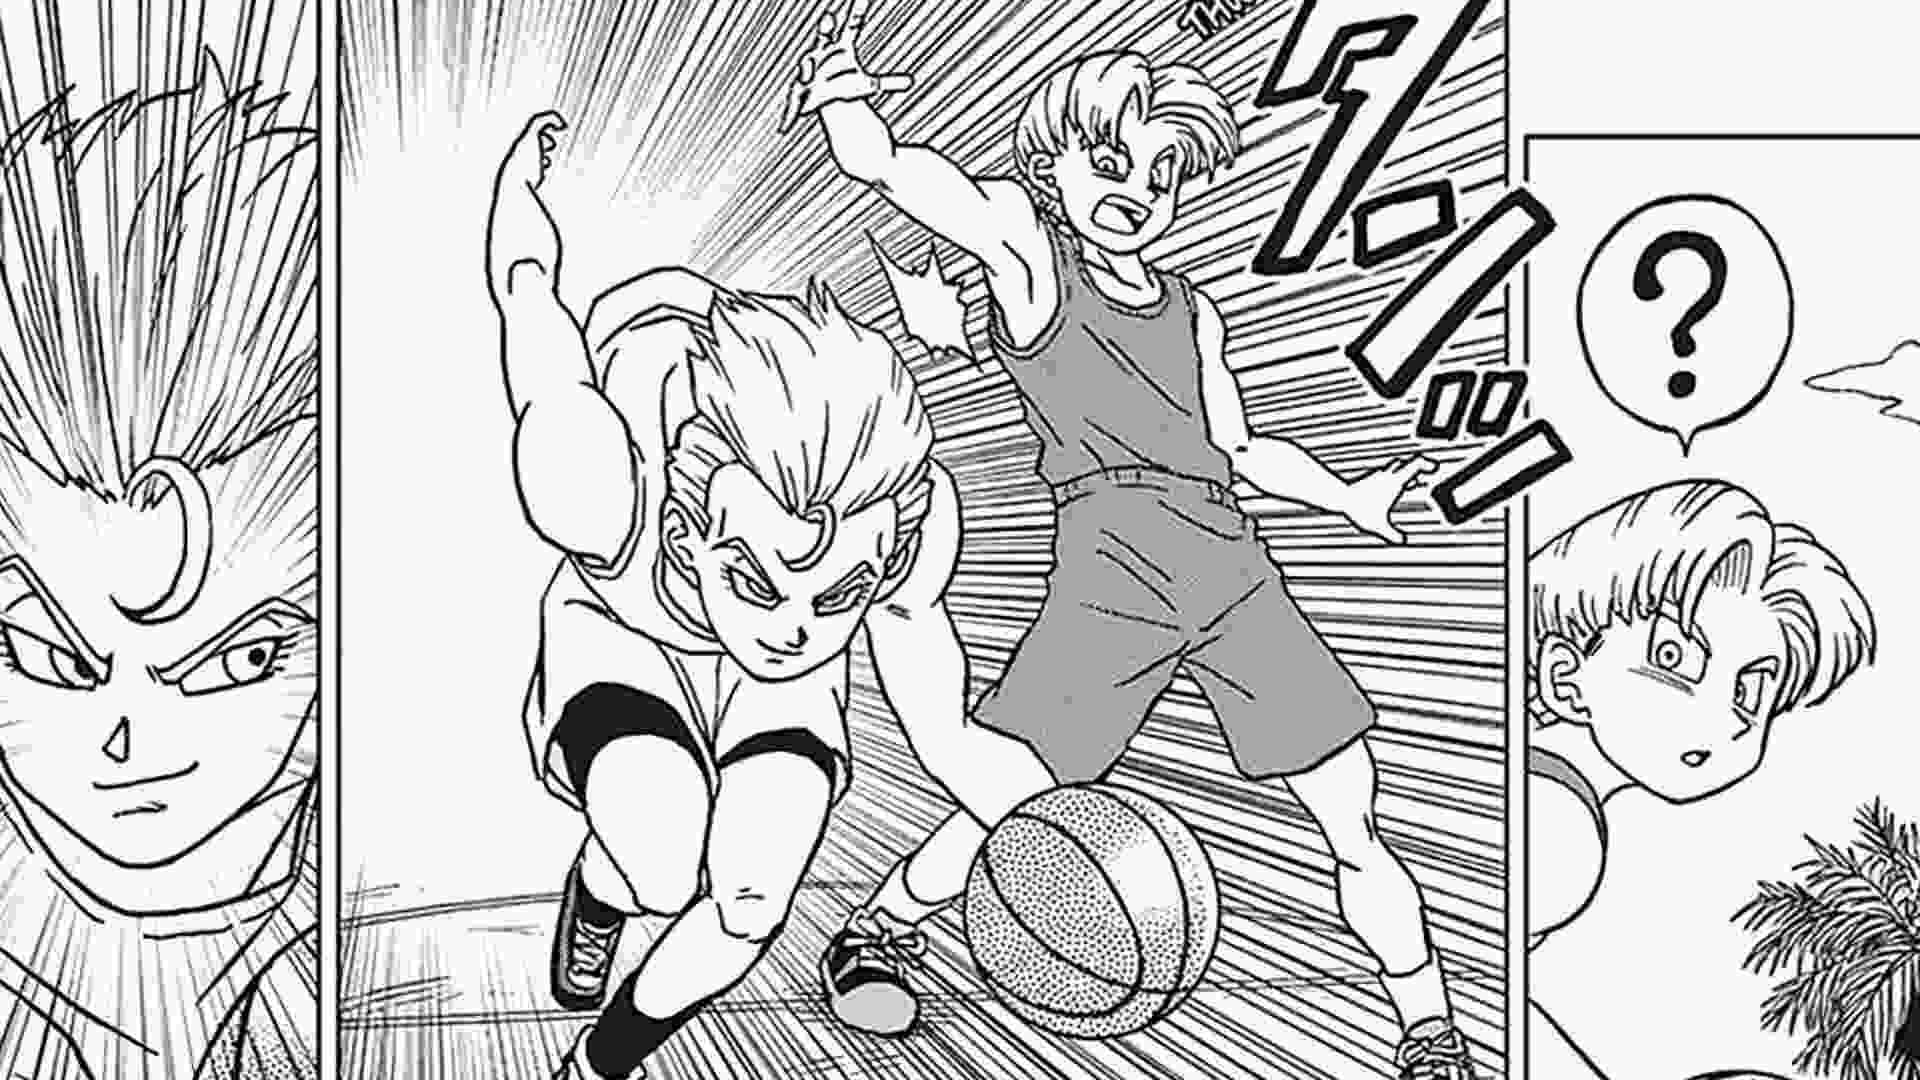 Dragon Ball Super capítulo 93 fecha de lanzamiento, hora, manga